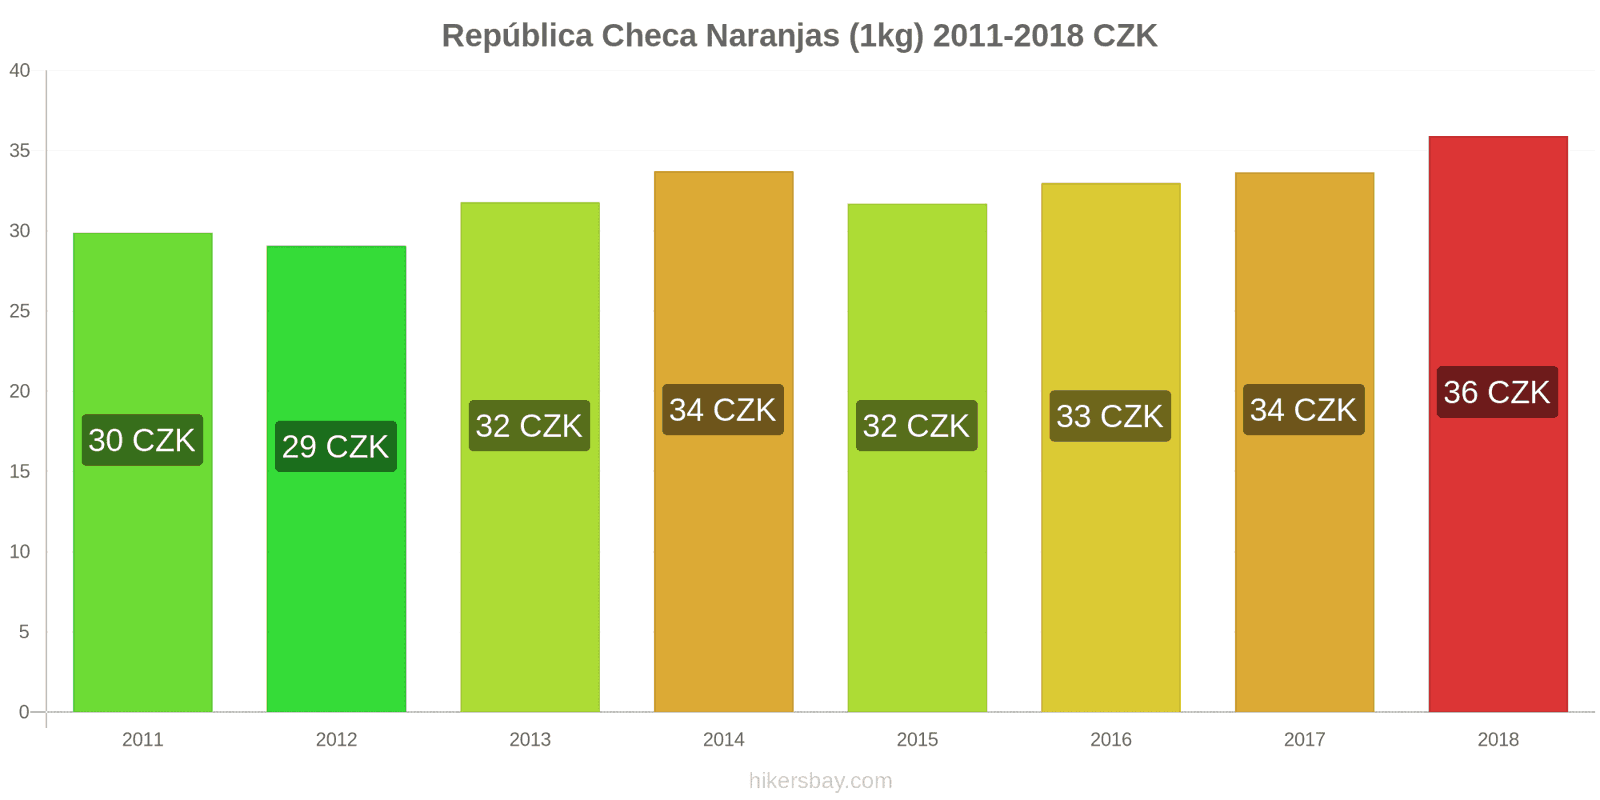 República Checa cambios de precios Naranjas (1kg) hikersbay.com